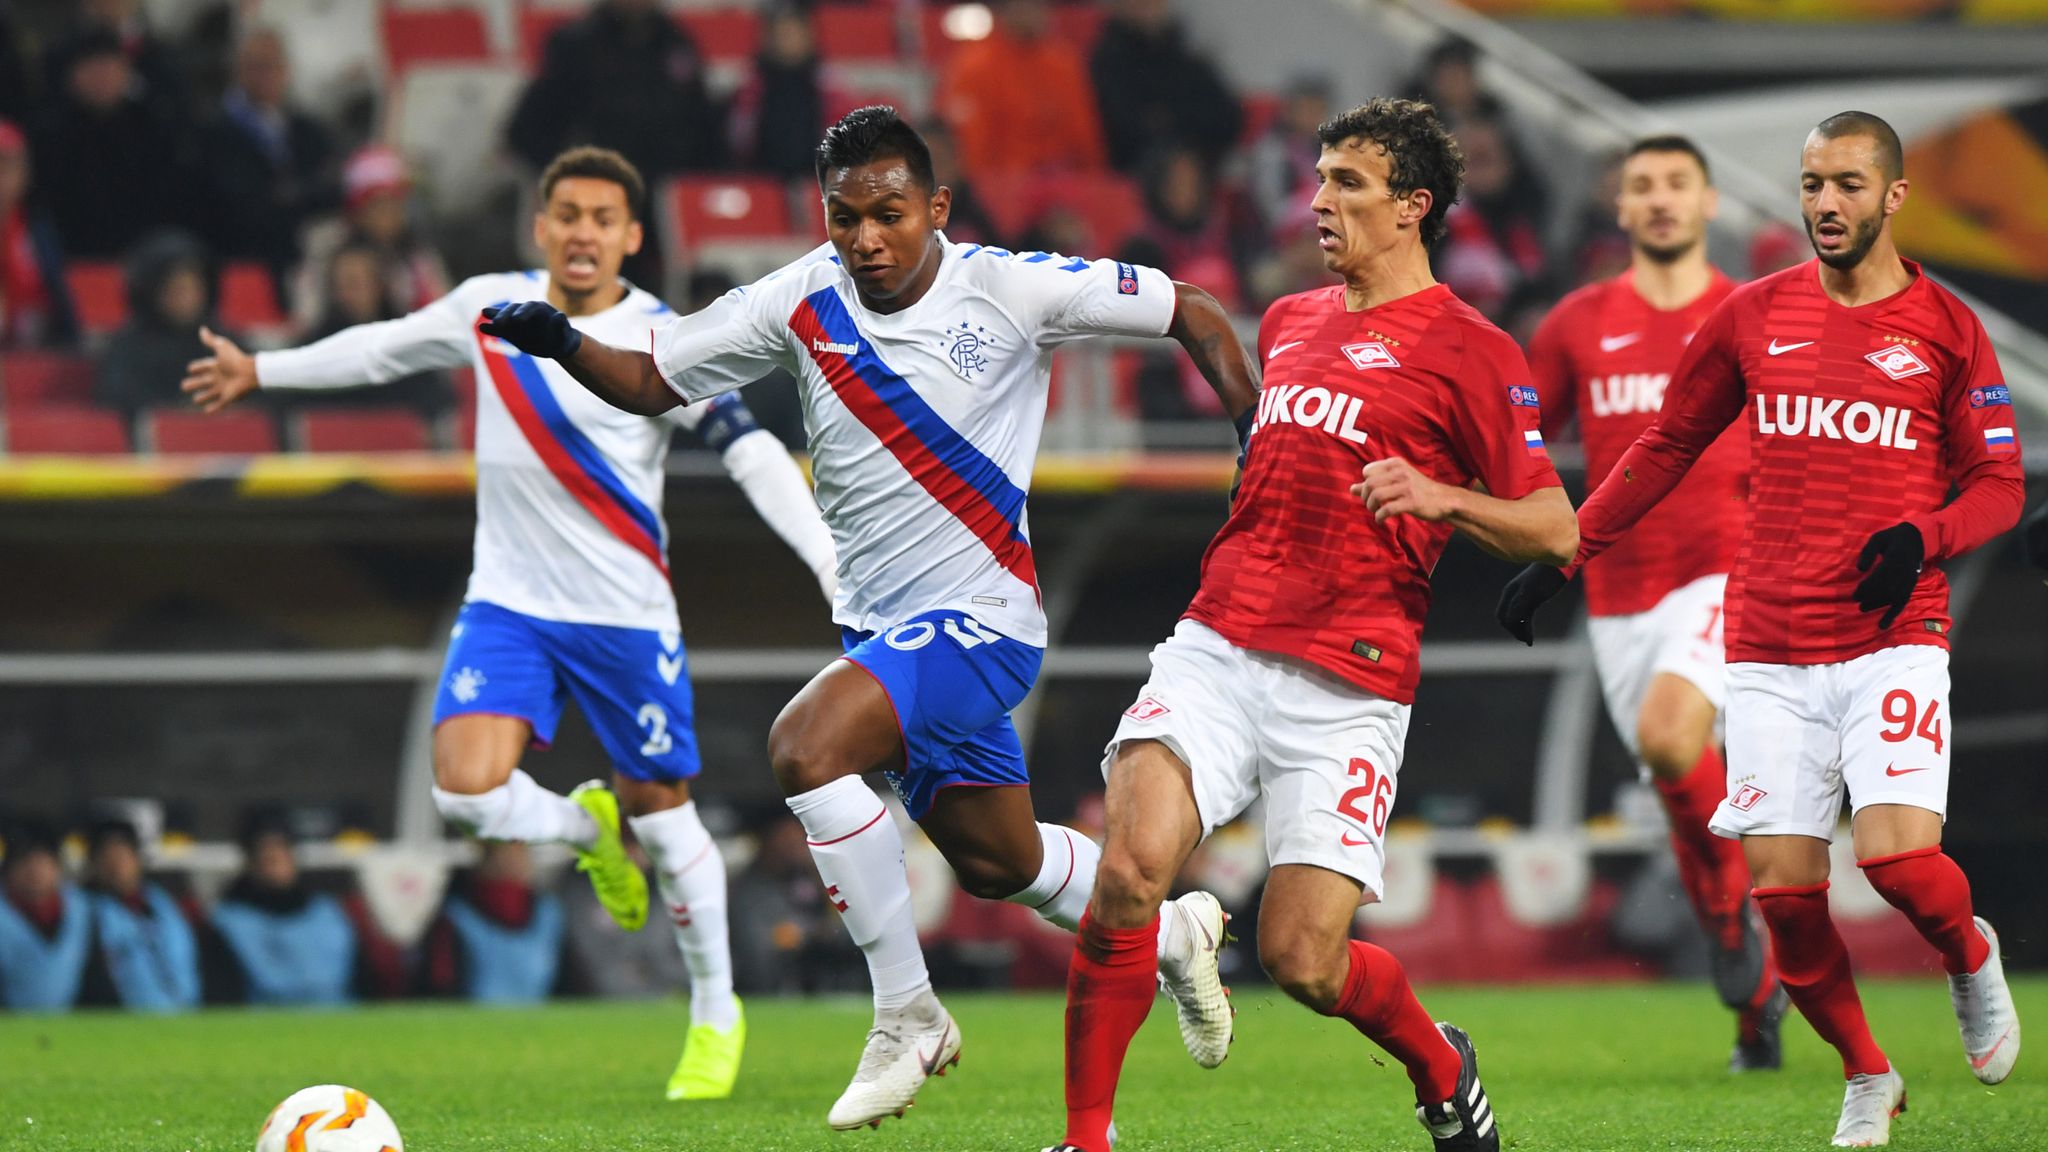 Spartak Moscow 4-3 Rangers: 11-game unbeaten Europa League run